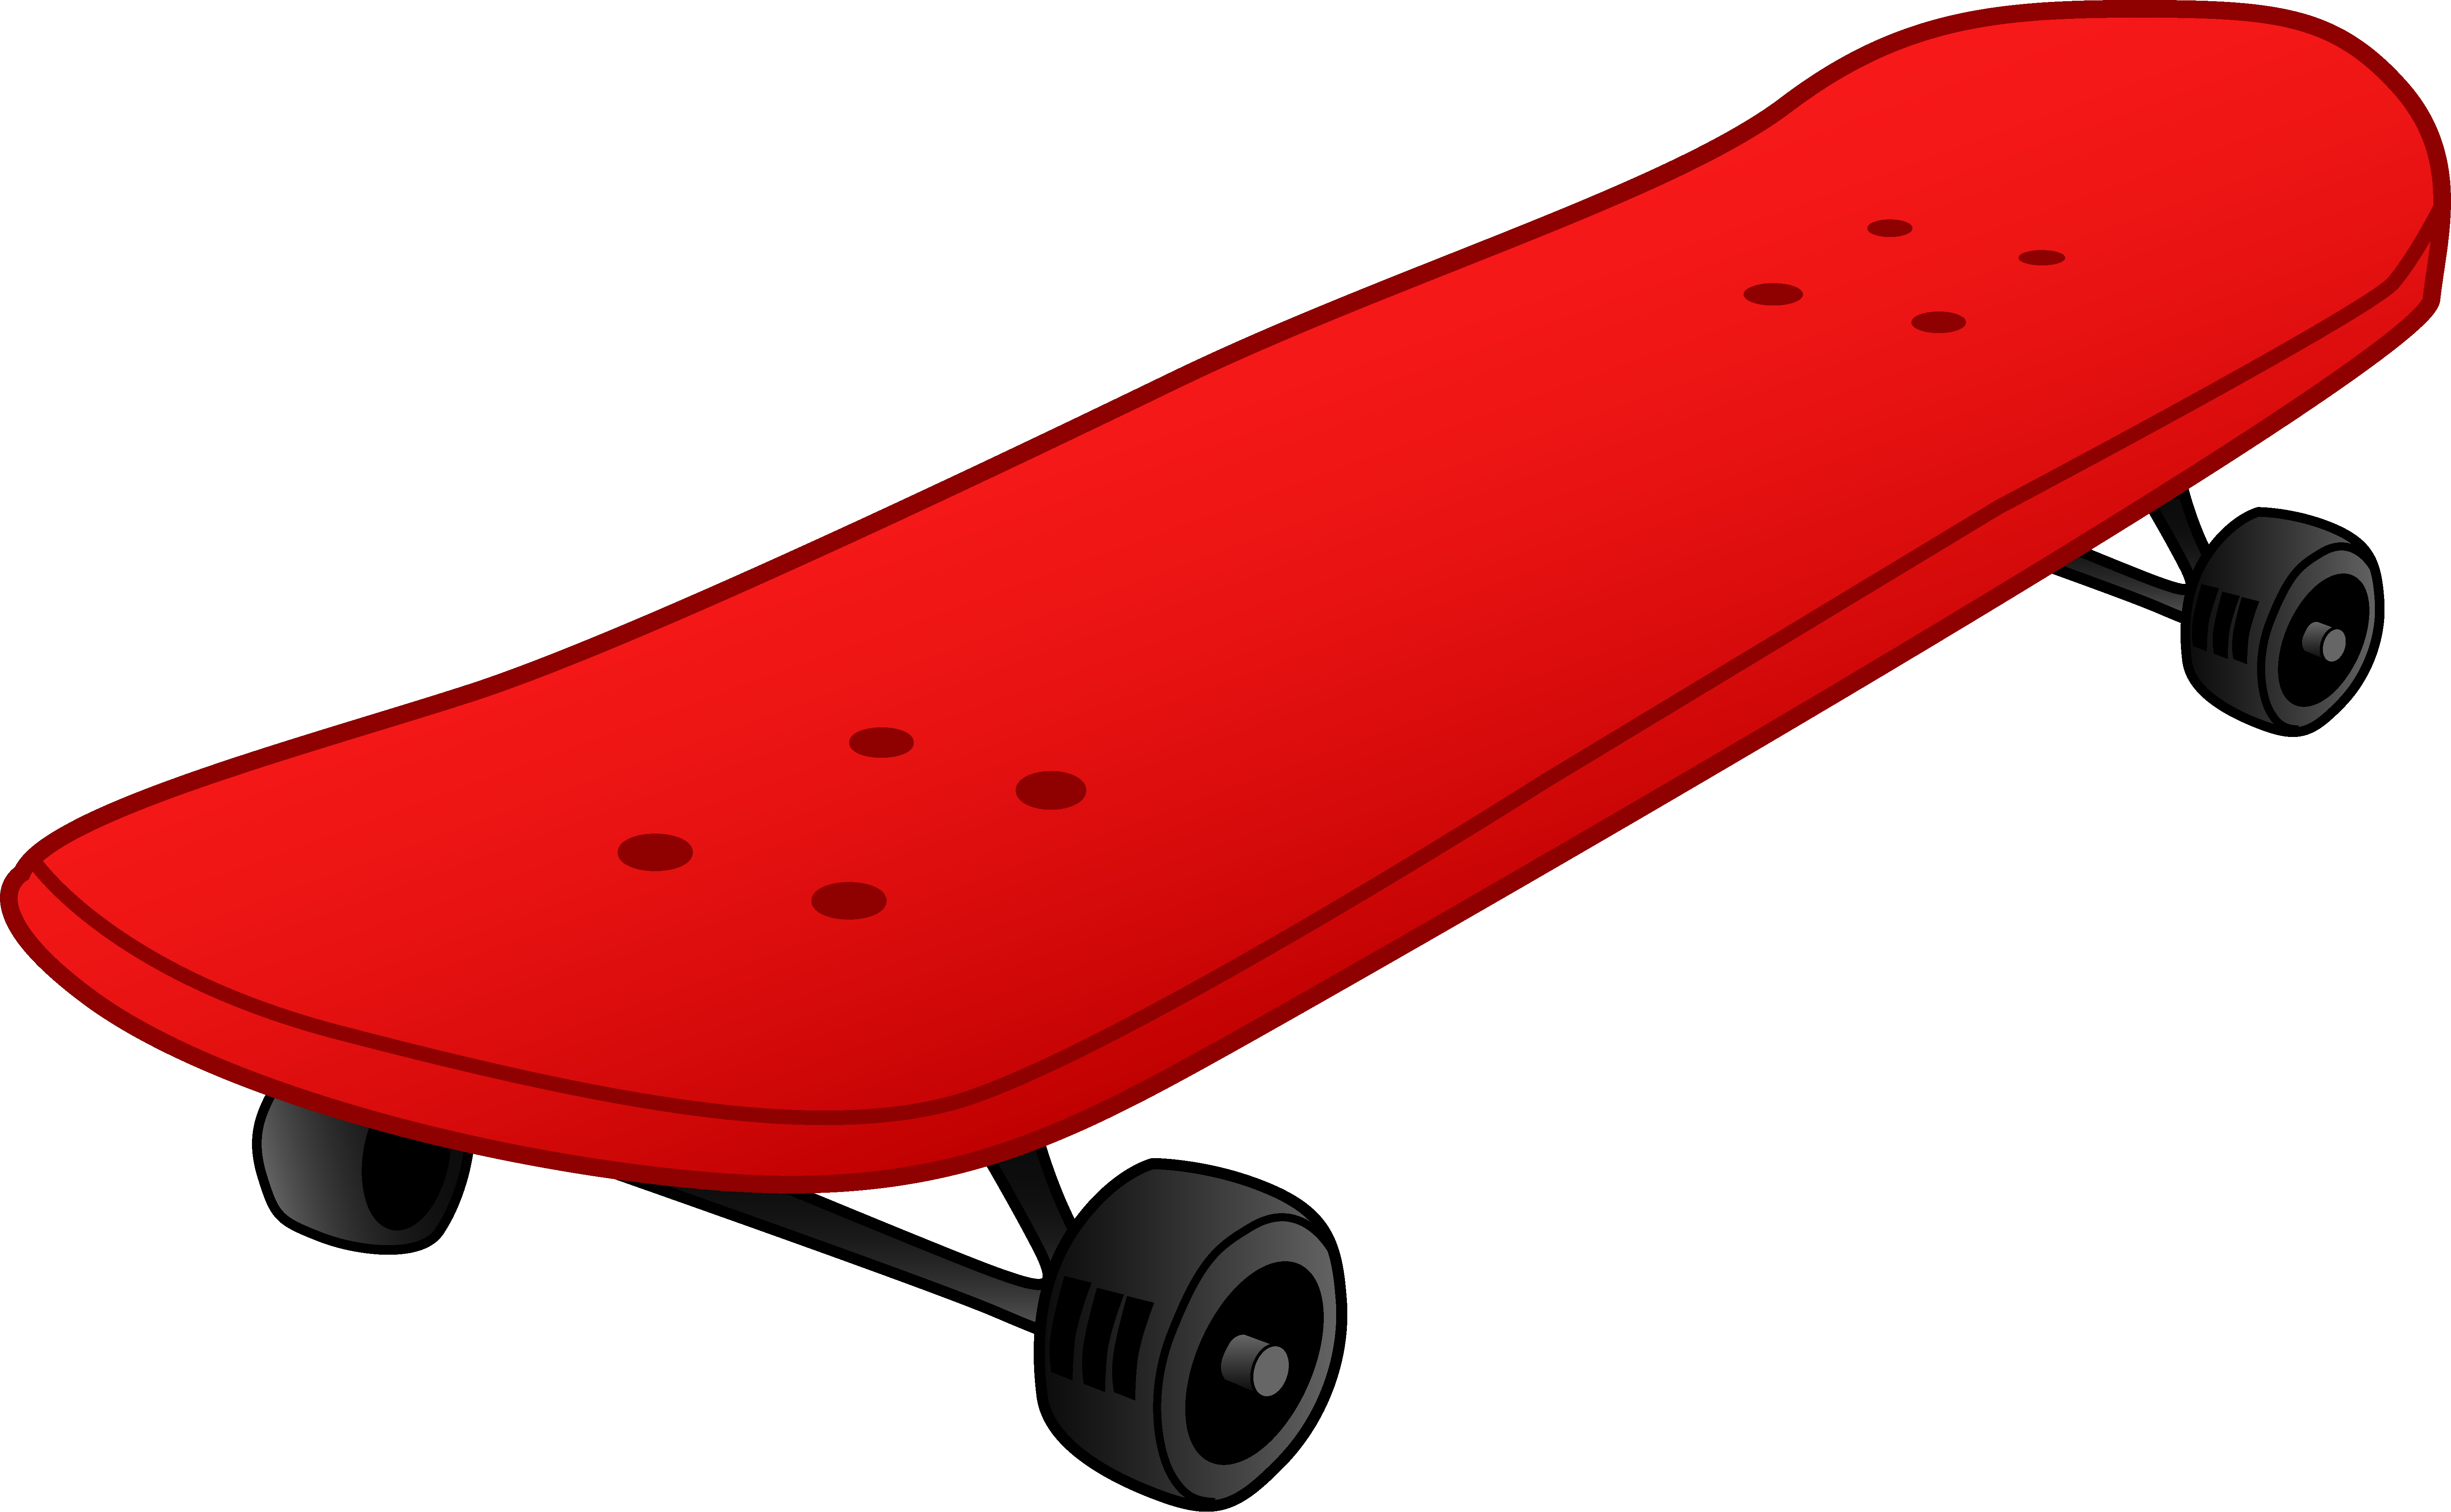 Skateboard PNG Images Transparent Free Download.